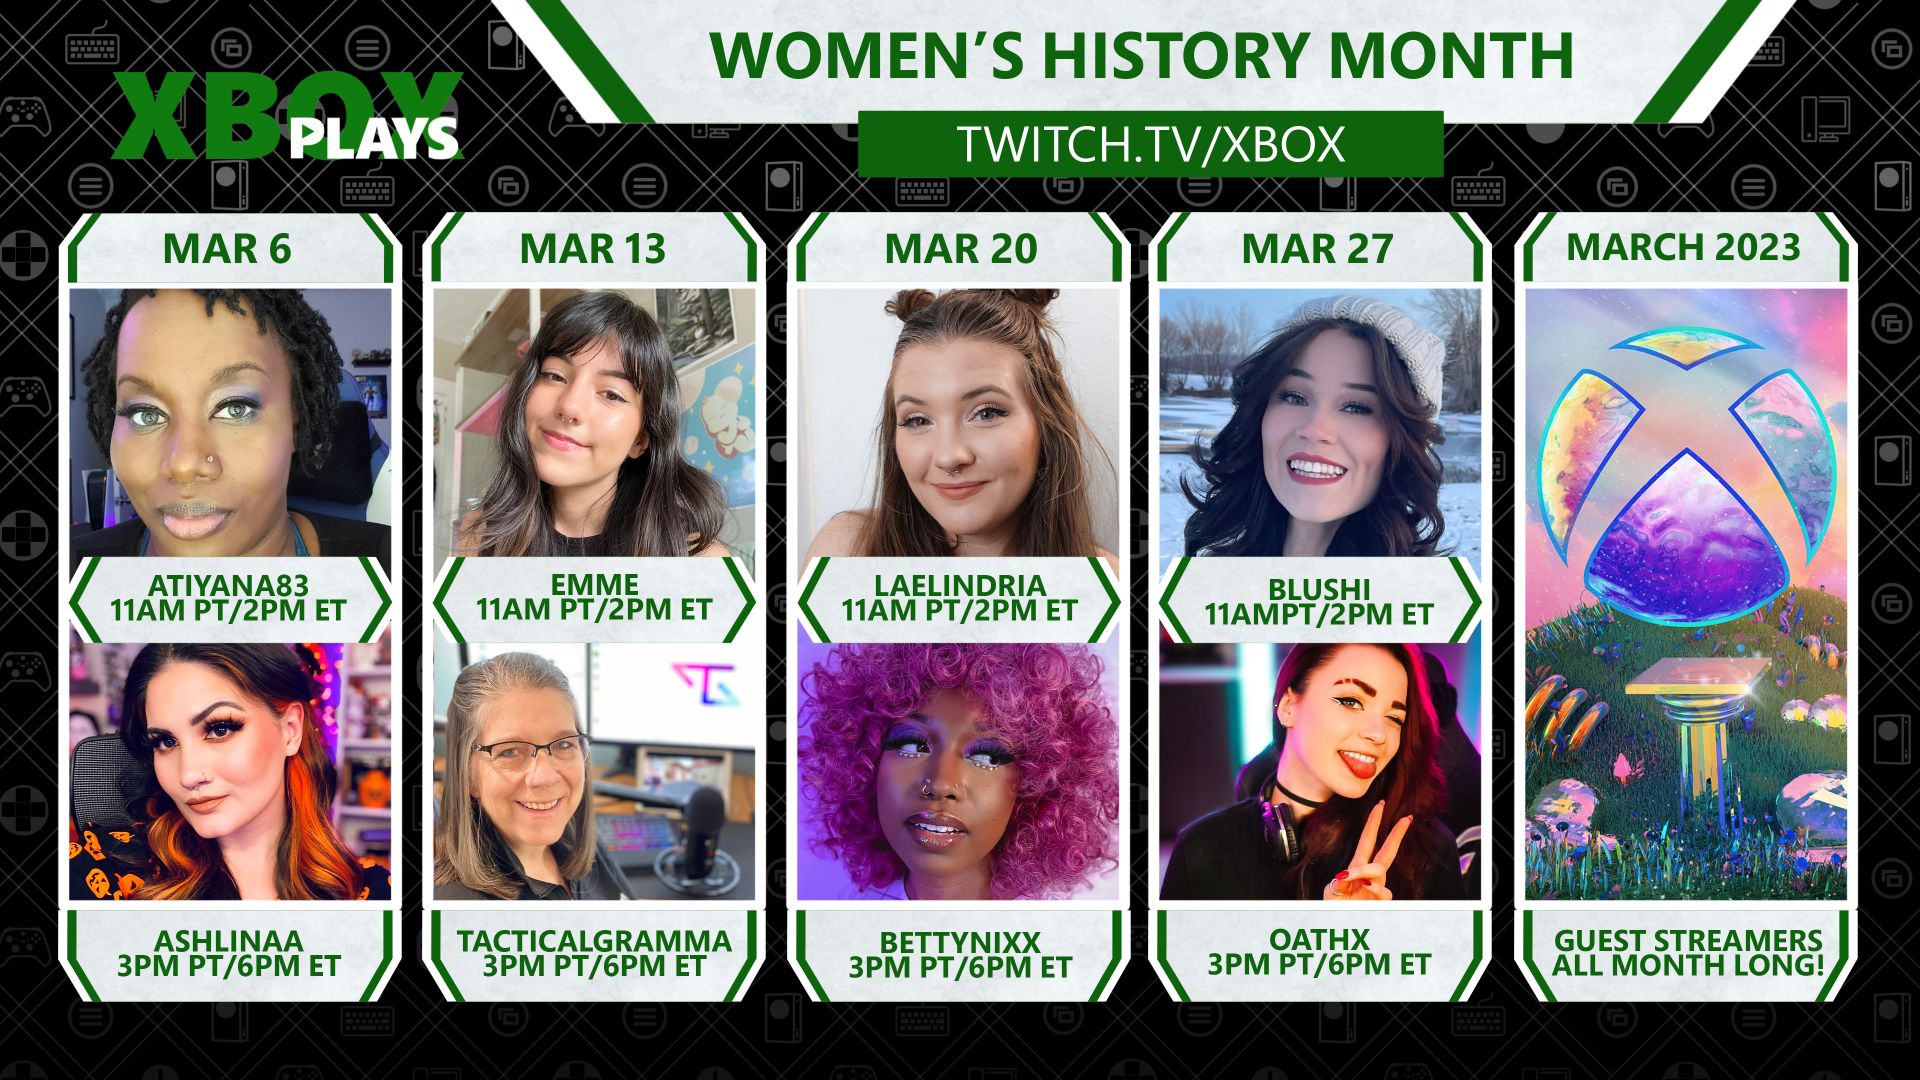 twitch.tv/xbox adresindeki Xbox Plays for Women's History Month'da sekiz kadın oyuncunun yer aldığı bir derleme görüntüsü.